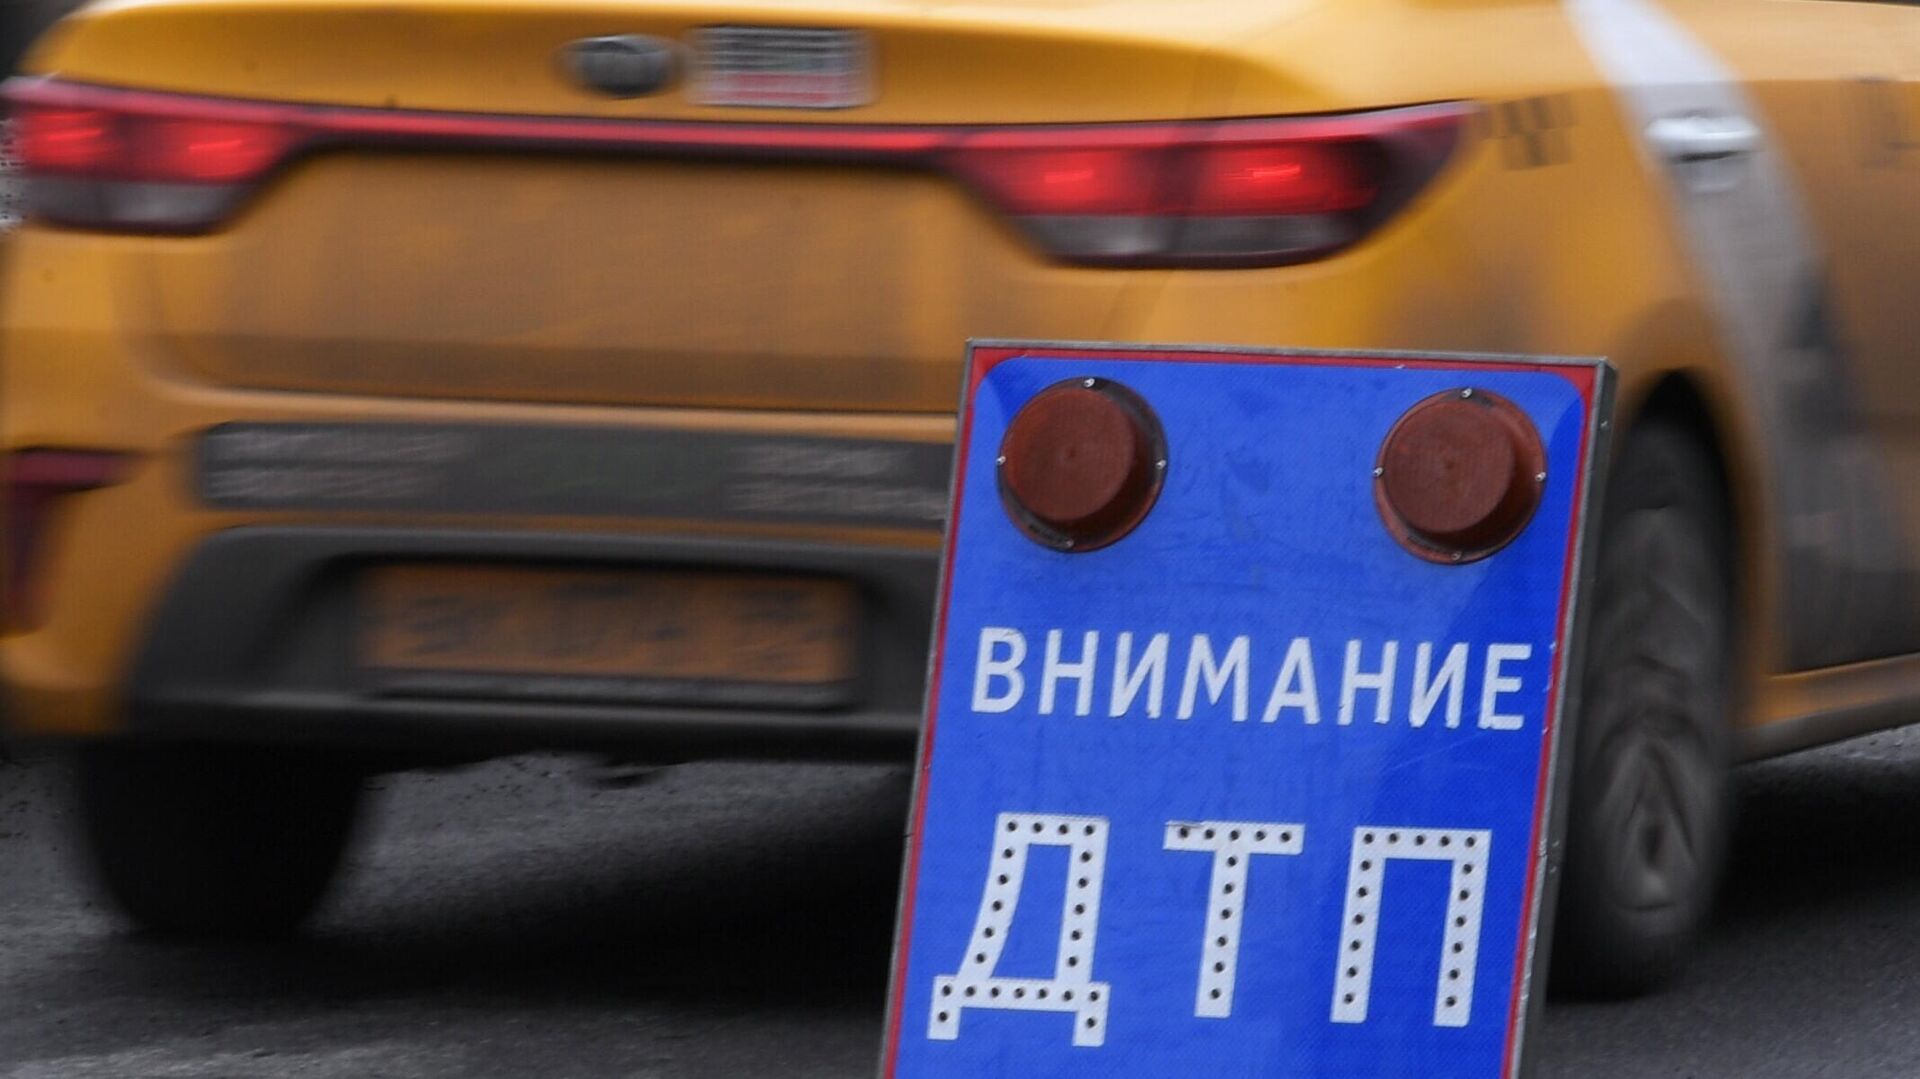 На жителя Югры, разбросавшего 100 тысяч рублей в машине ДПС, завели дело